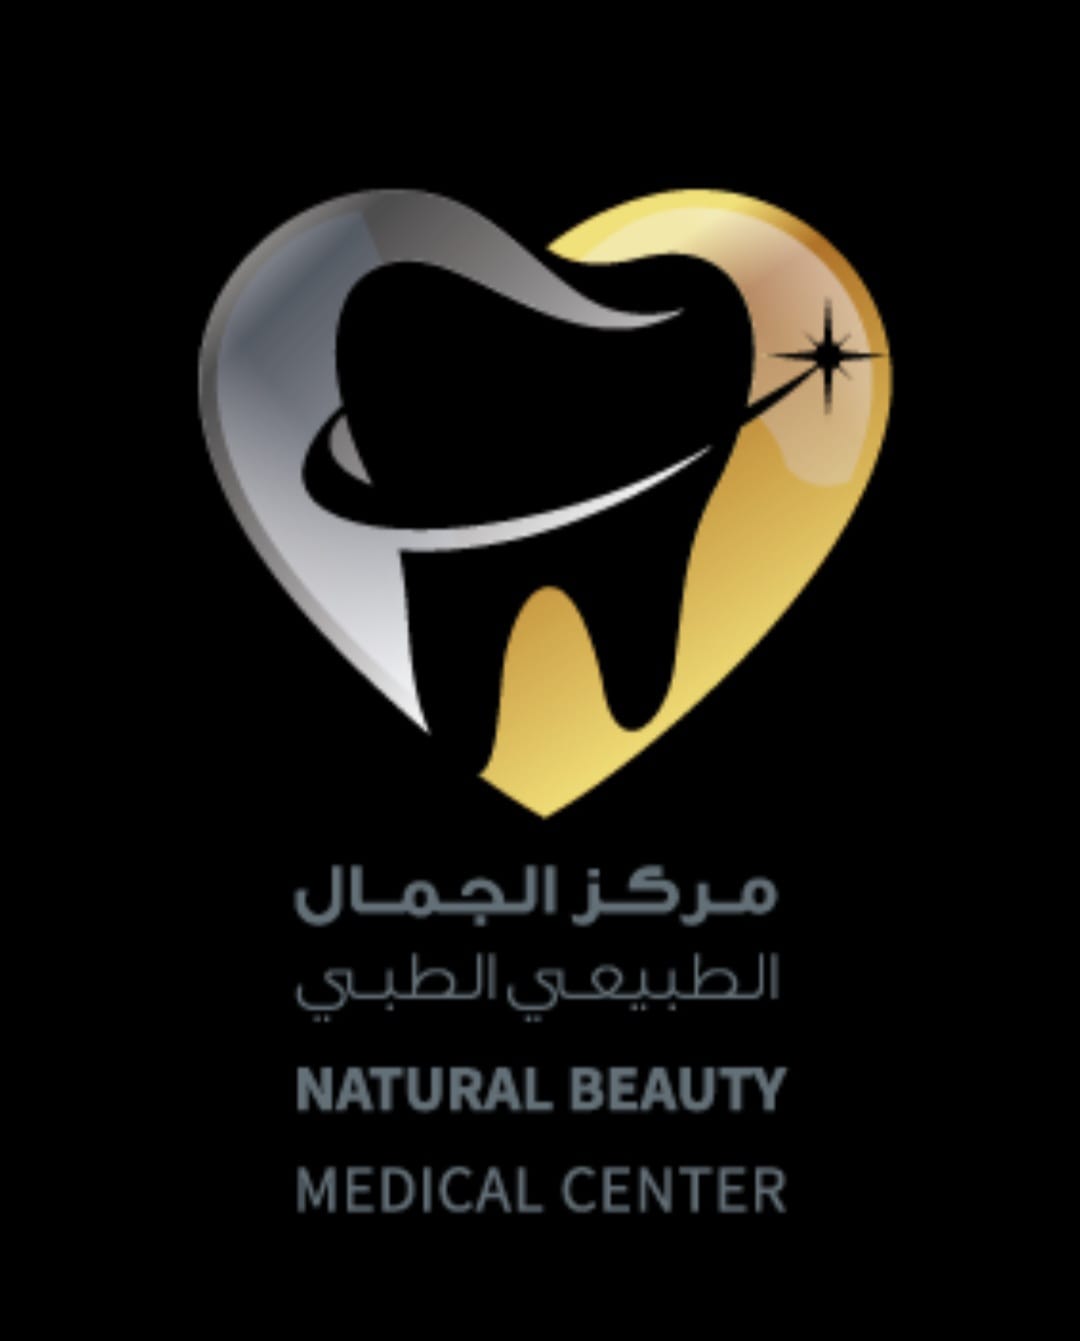 مركز الجمال الطبيعي لطب الأسنان (المنامة )Natural Beauty Medical Center